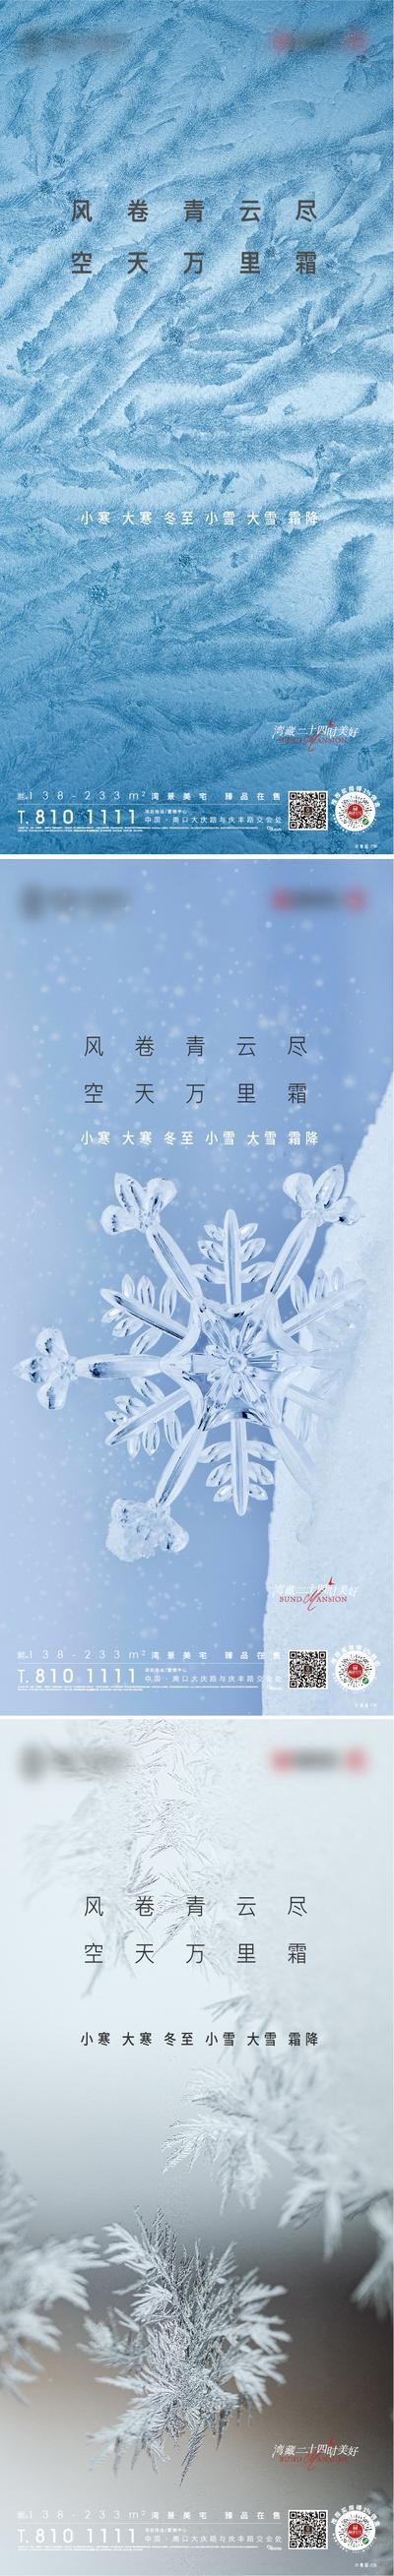 南门网 海报 房地产 二十四节气 小雪 大雪 霜降 小寒 大寒 冬至 系列